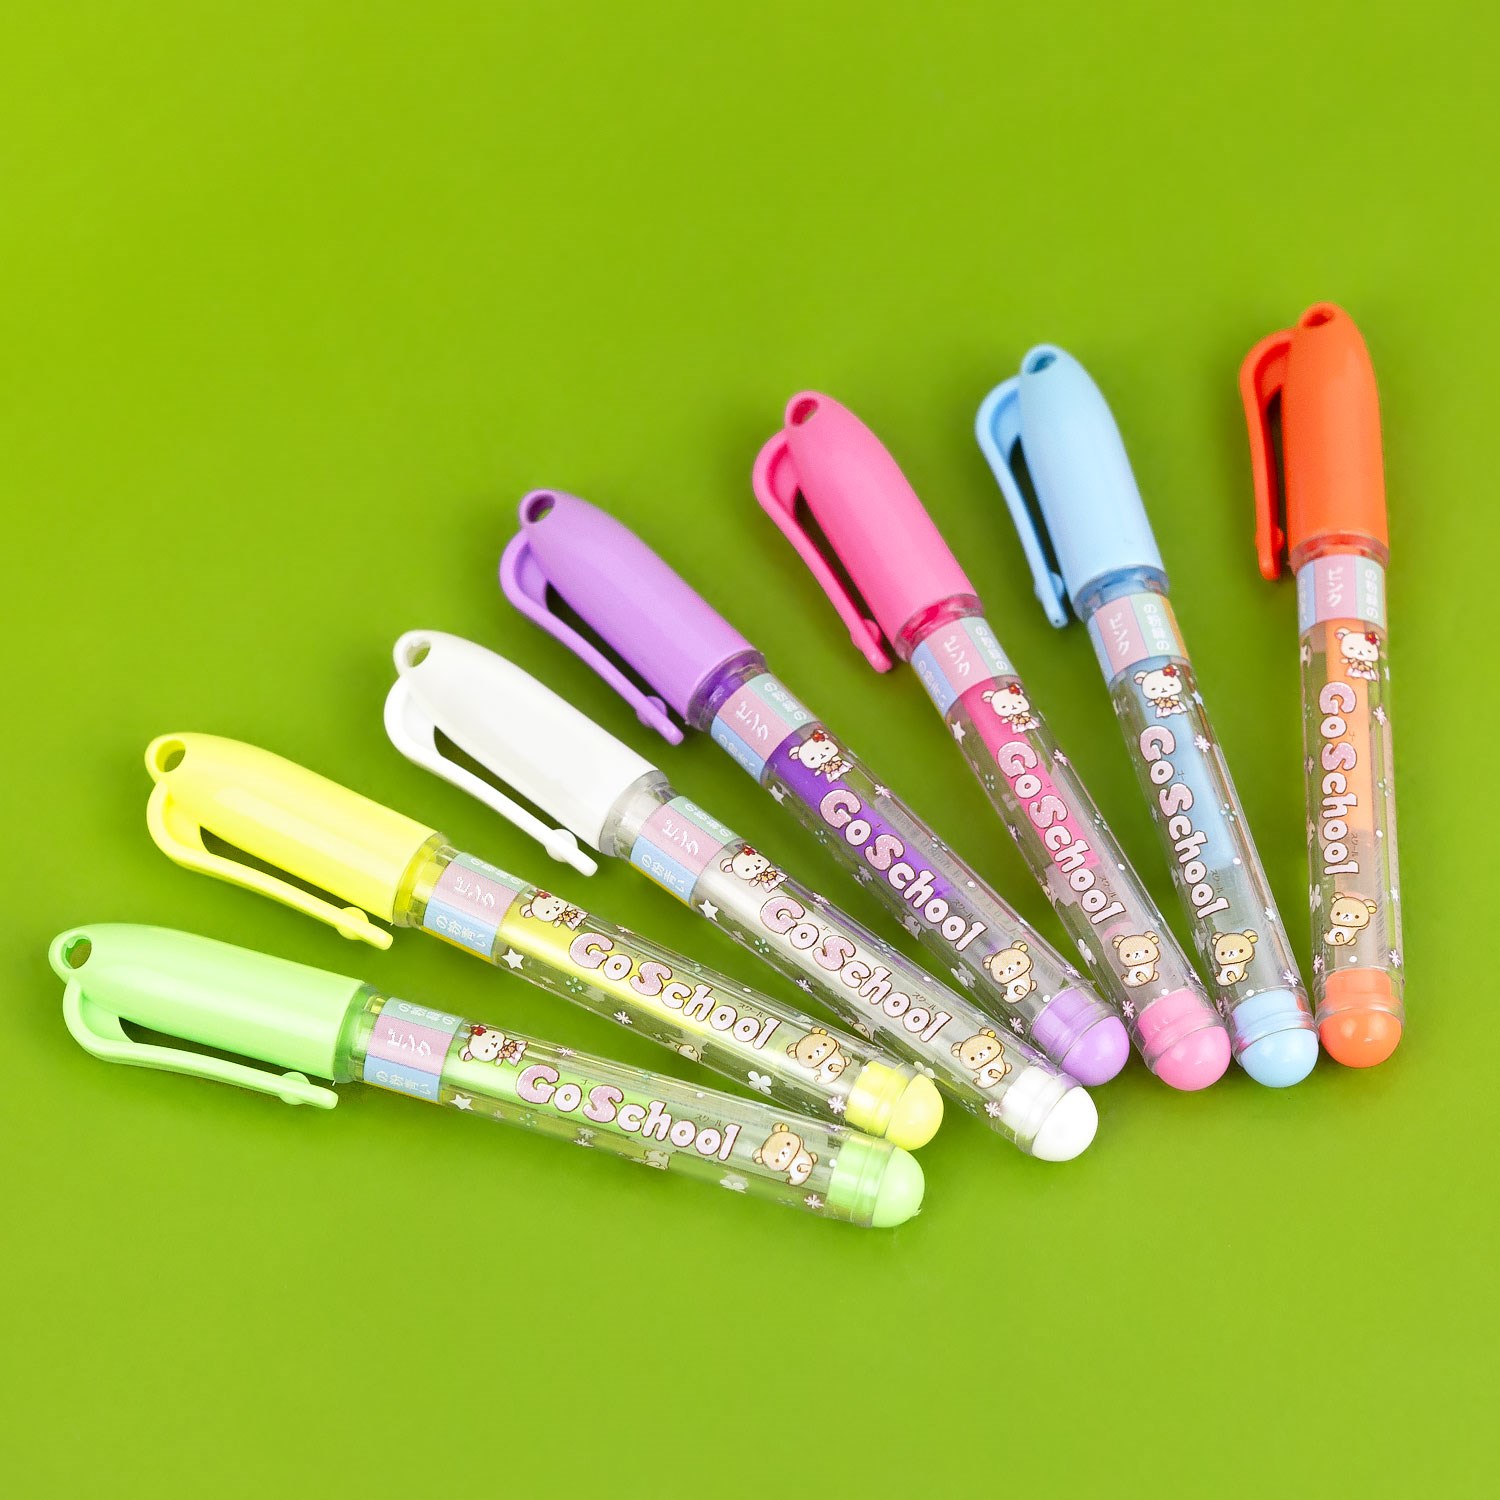 Купить мини ручки. Мини ручка. Разноцветные ручки. Мини цветные ручки. Ручки гелевые блестящие маленькие.